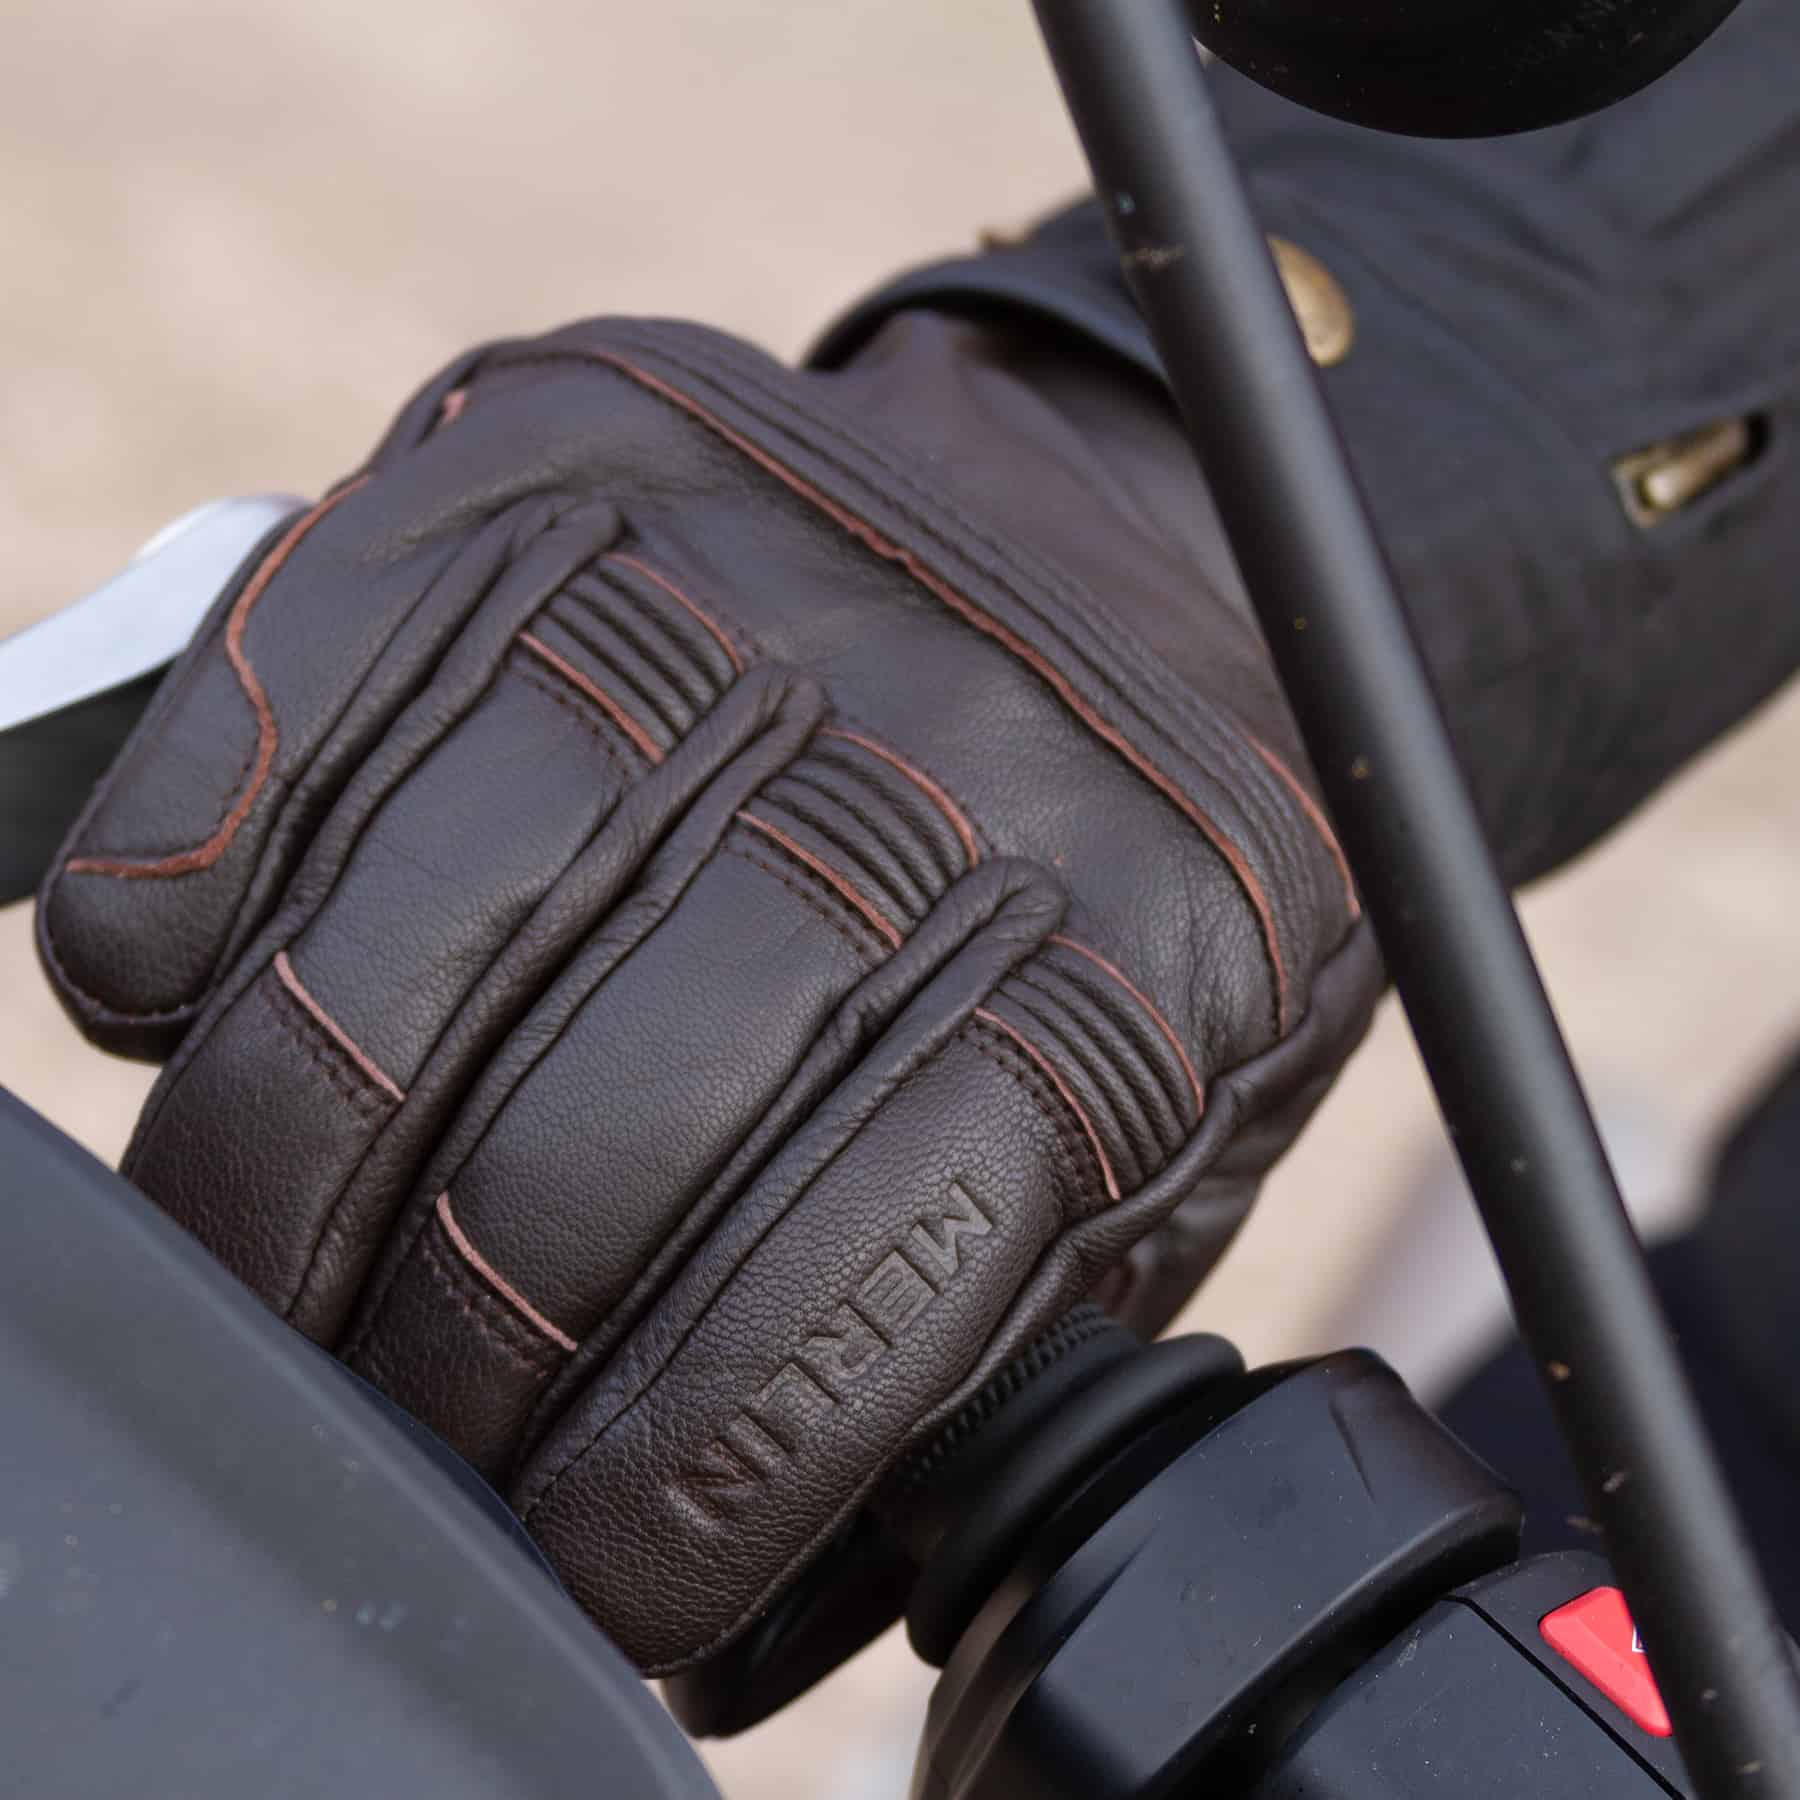 Merlin Minworth Heated motorcycle glove in dark brown